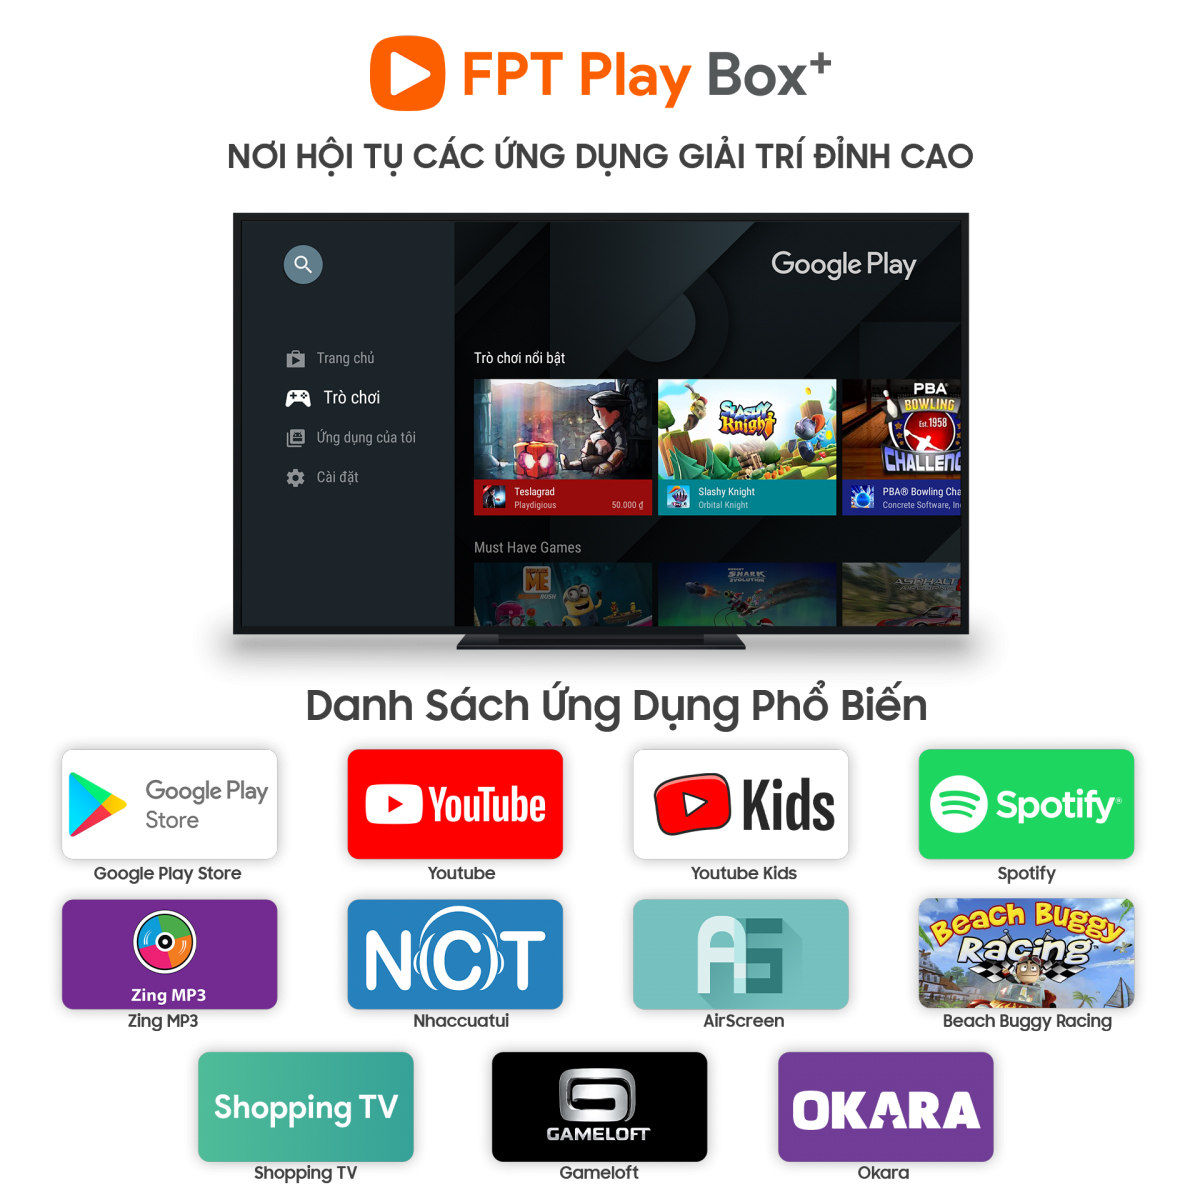 Các ứng dụng trên FPT Play Box